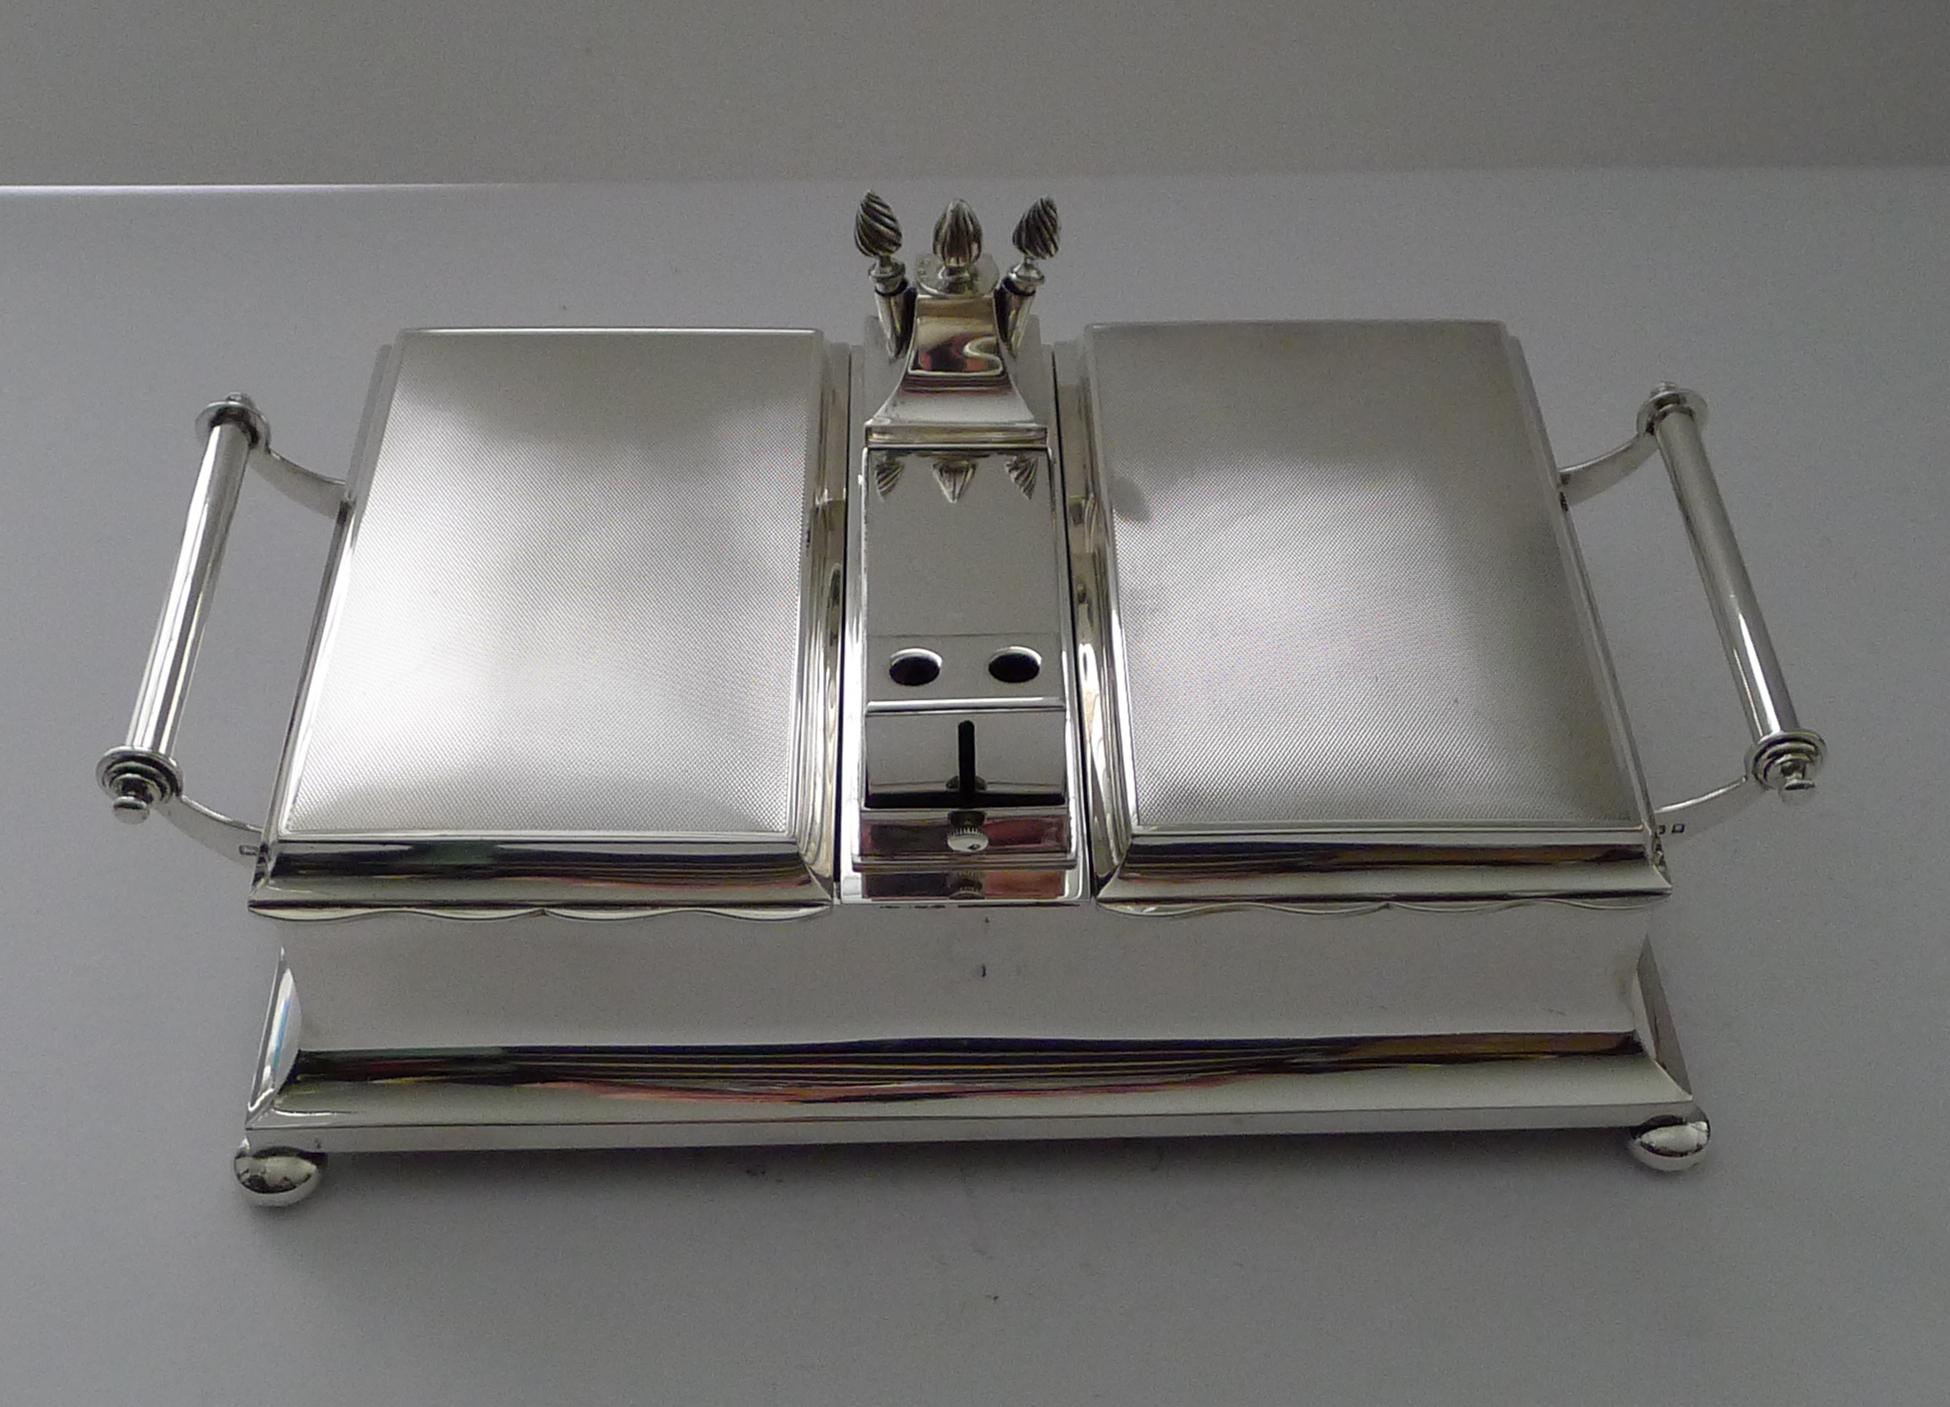 Ein wirklich außergewöhnliches Art Deco Gentleman's Smoking Kompendium, schöne Qualität von der sehr begehrten Silberschmiede, Mappin & Webb.

Dieses beeindruckende Stück steht auf vier originalen Füßen und verfügt über zwei Zigarrenfächer mit